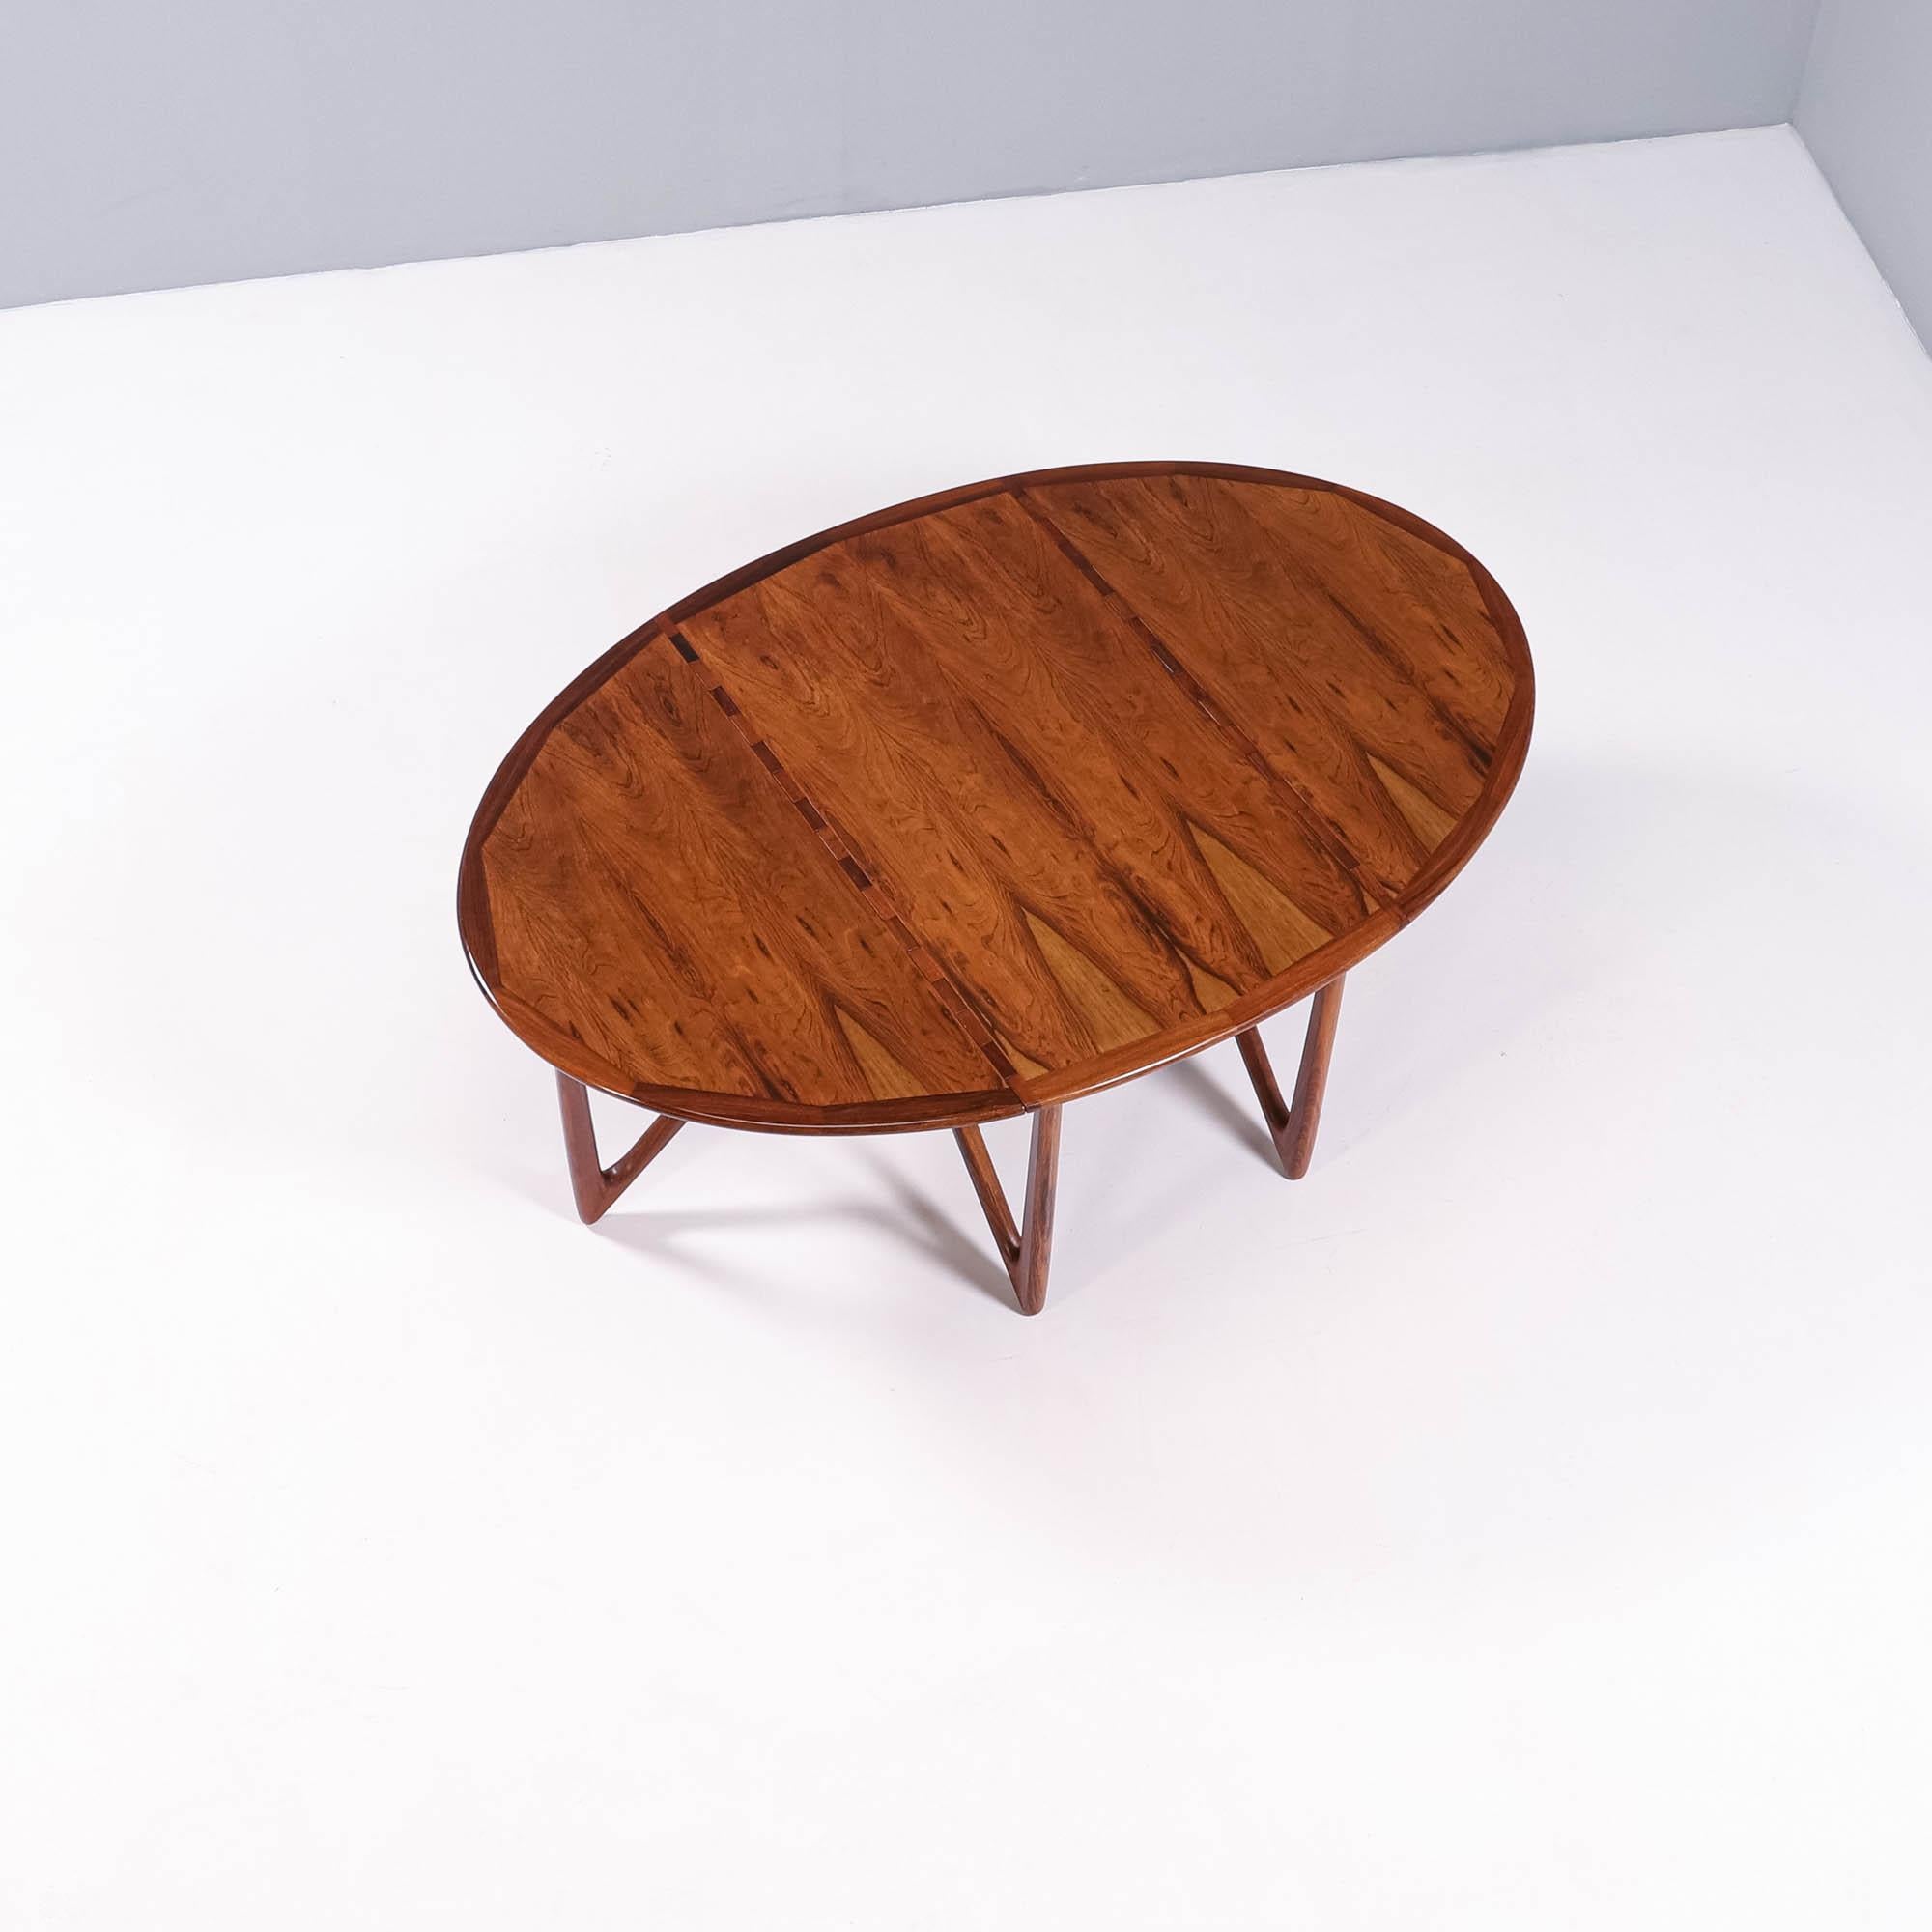 Dieser seltene Esstisch aus Palisanderholz mit sechs V-förmigen Beinen wurde von Kurt Østervig für Jason Furniture in Dänemark entworfen und mit außergewöhnlicher Handwerkskunst gefertigt. 

Die Beine an beiden Enden können gedreht werden, so dass